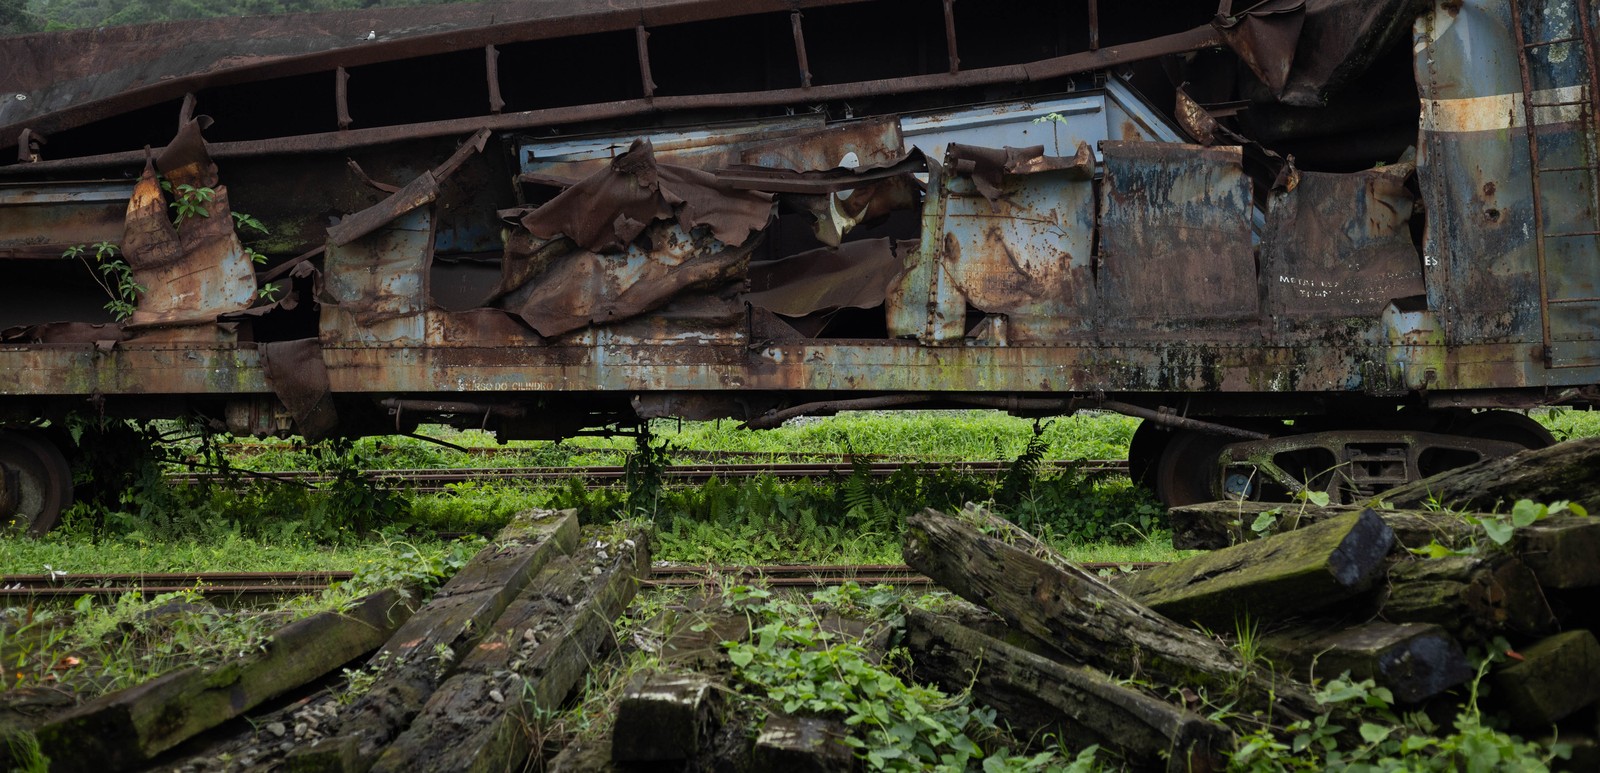 Moradores reclamam de mosquitos e cobras escondidos em trens abandonados — Foto: Maria Isabel Oliveira